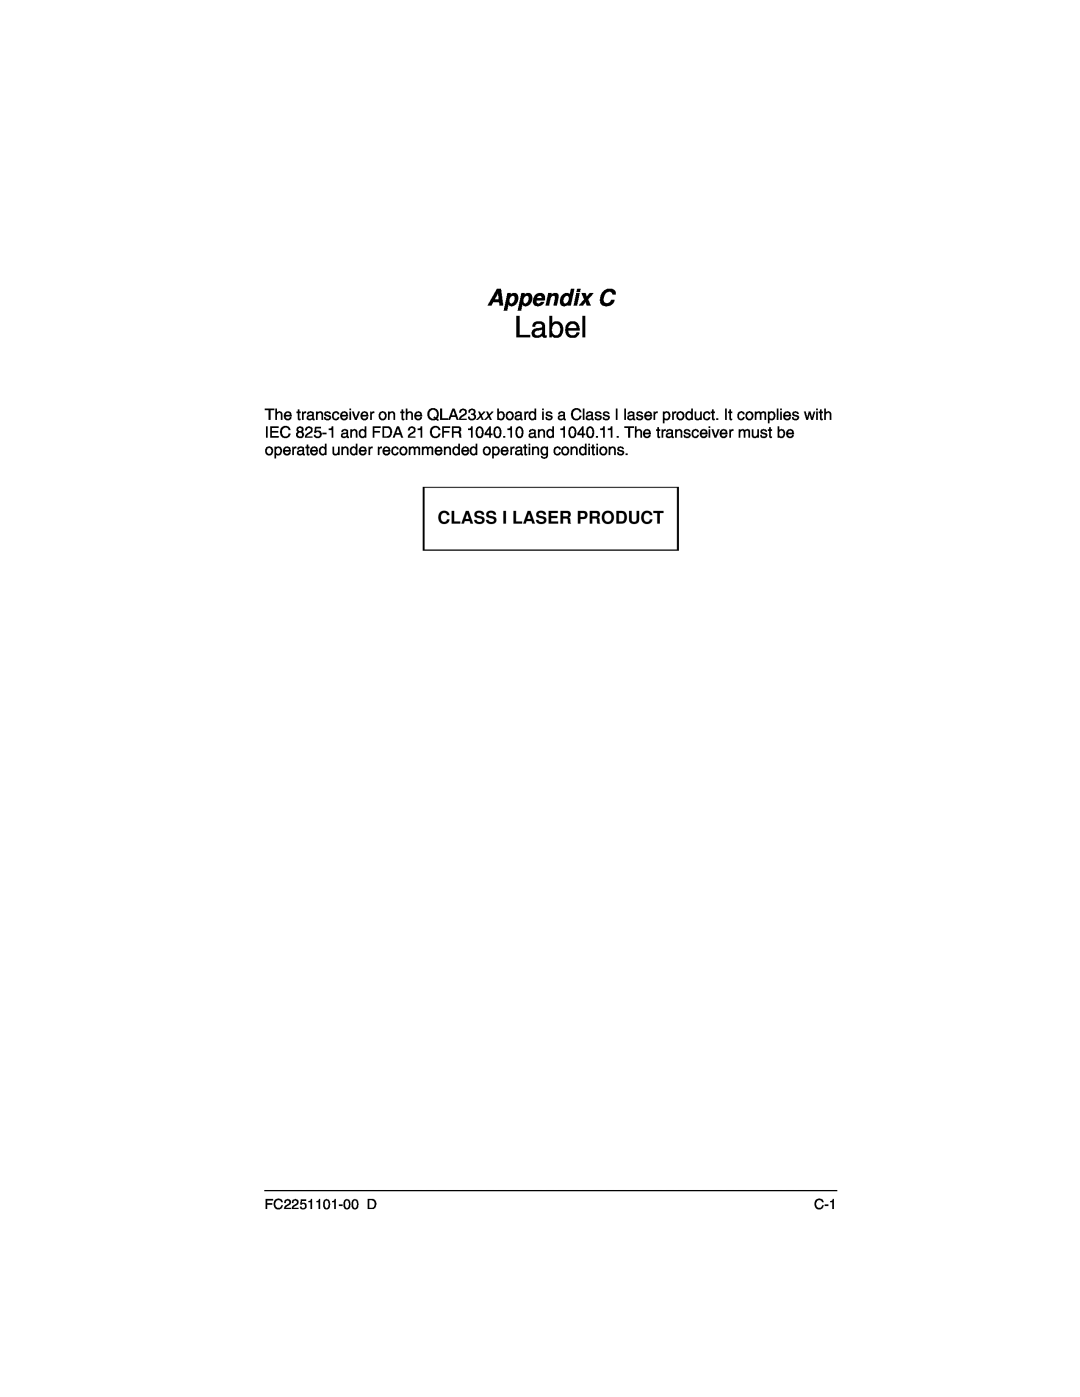 Q-Logic QLA2300 manual Label, Appendix C 